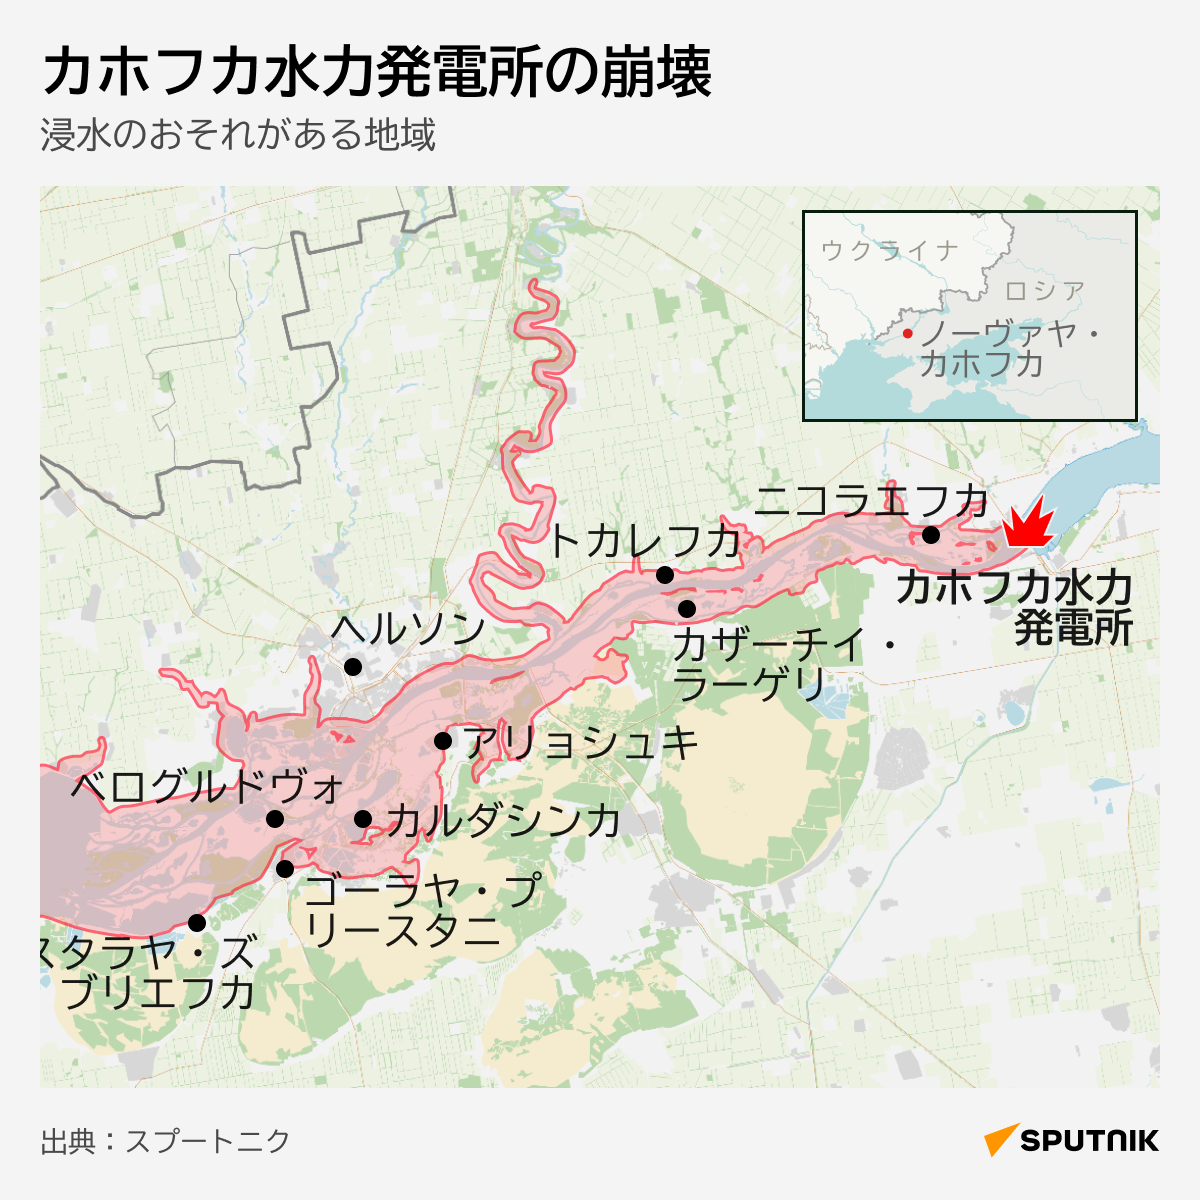 Разрушение Каховской ГЭС - Sputnik 日本